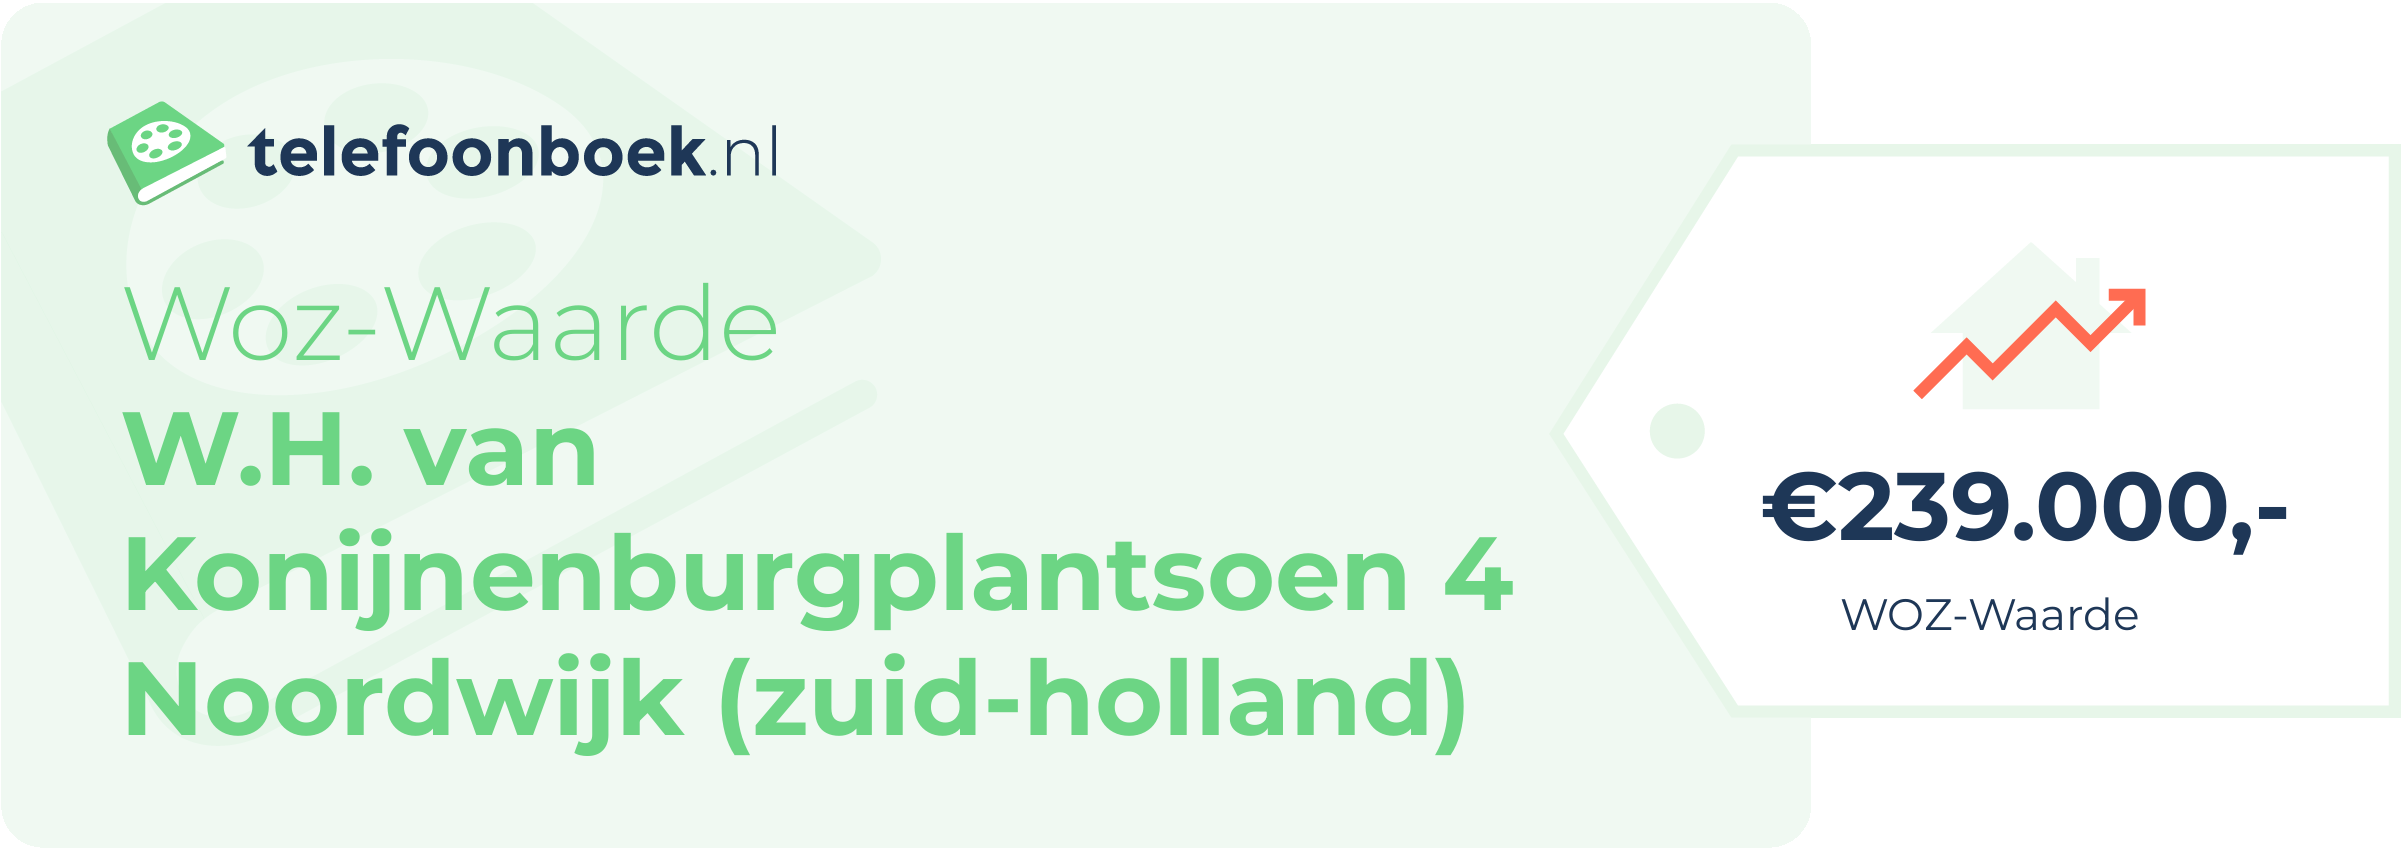 WOZ-waarde W.H. Van Konijnenburgplantsoen 4 Noordwijk (Zuid-Holland)